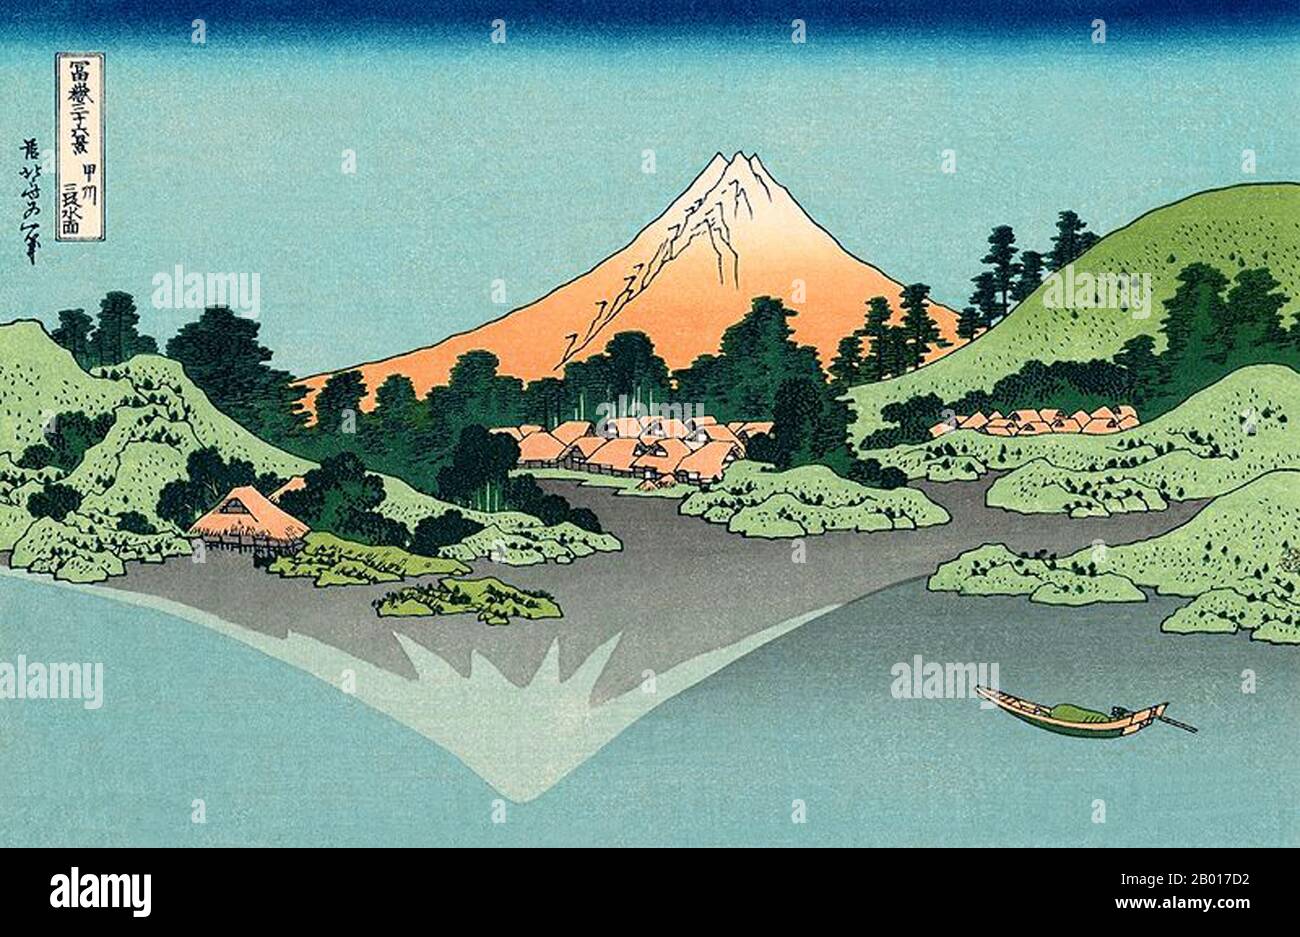 Japan: ‘Spiegelung des Fuji im Kawaguchi-See vom Misaka-Pass in der Kai-Provinz aus gesehen’. Ukiyo-e Holzschnitt aus der Serie ‘Thirty-Six views of Mount Fuji’ von Katsushika Hokusai (31. Oktober 1760 - 10. Mai 1849), 1830. ‘Thirty-Six Views of Mount Fuji’ ist eine Serie von Holzschnitten der japanischen Künstlerin Katsushika Hokusai, die „Sukiyo-e“ ‘. Die Serie zeigt den Fuji in unterschiedlichen Jahreszeiten und Wetterbedingungen an verschiedenen Orten und Entfernungen. Es besteht tatsächlich aus 46 Drucken, die zwischen 1826 und 1833 entstanden sind. Die ersten 36 wurden in die ursprüngliche Publikation aufgenommen und 10 wurden hinzugefügt. Stockfoto